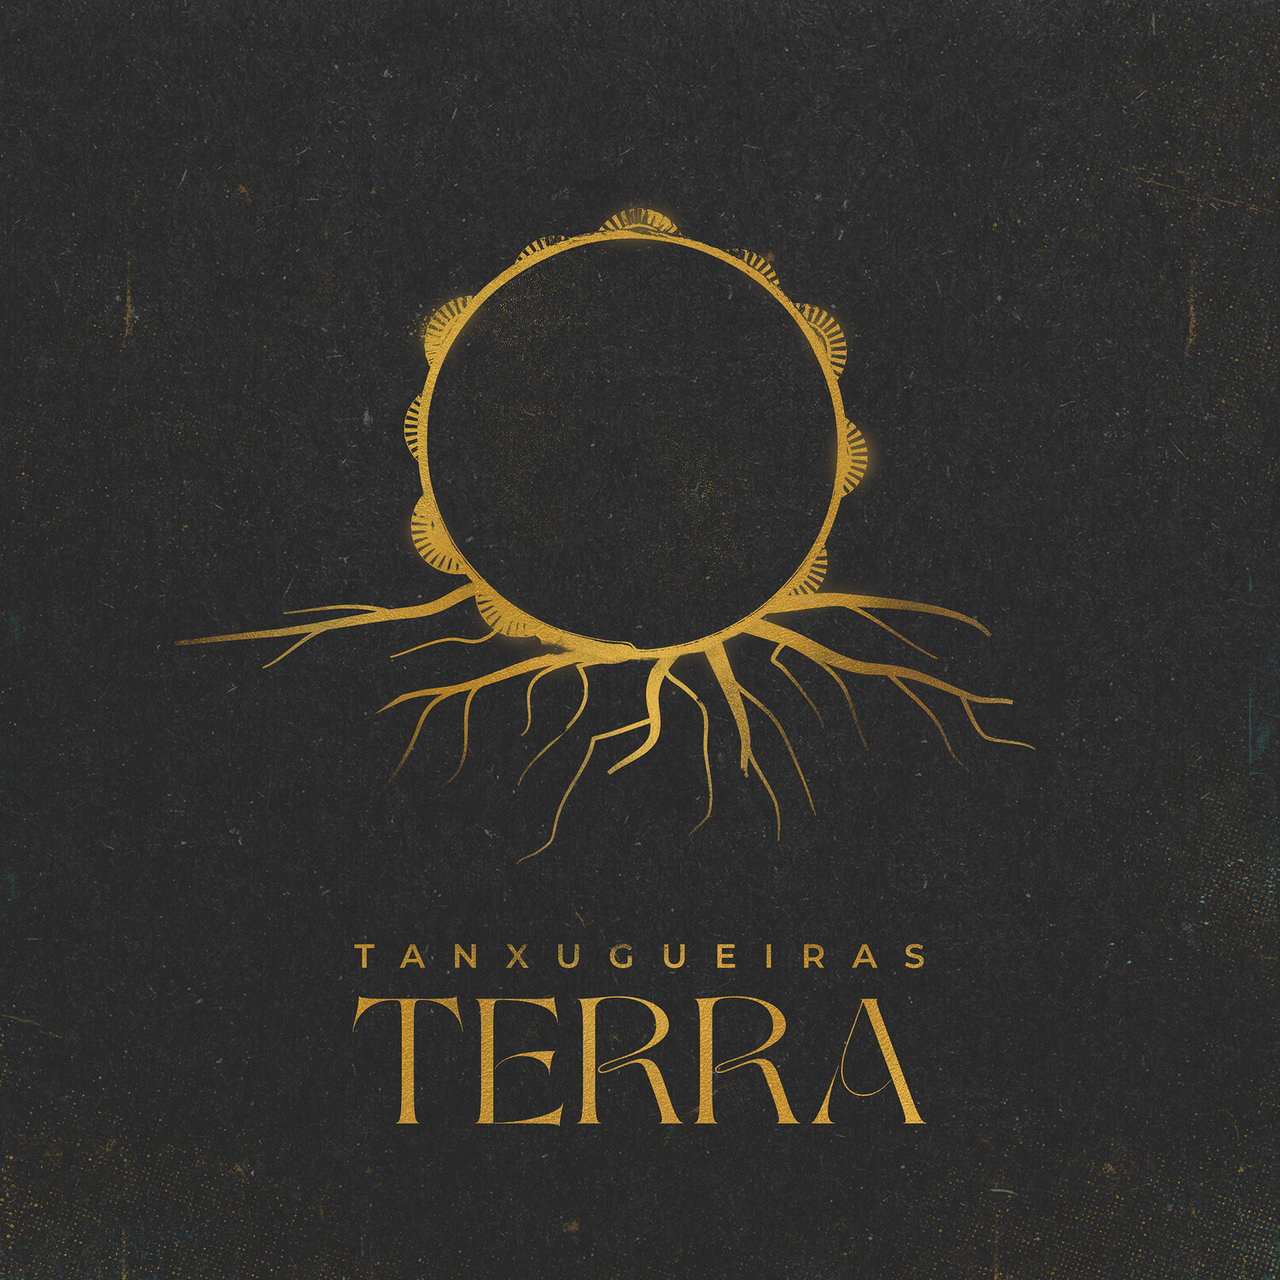 Tanxugueiras Terra cover artwork